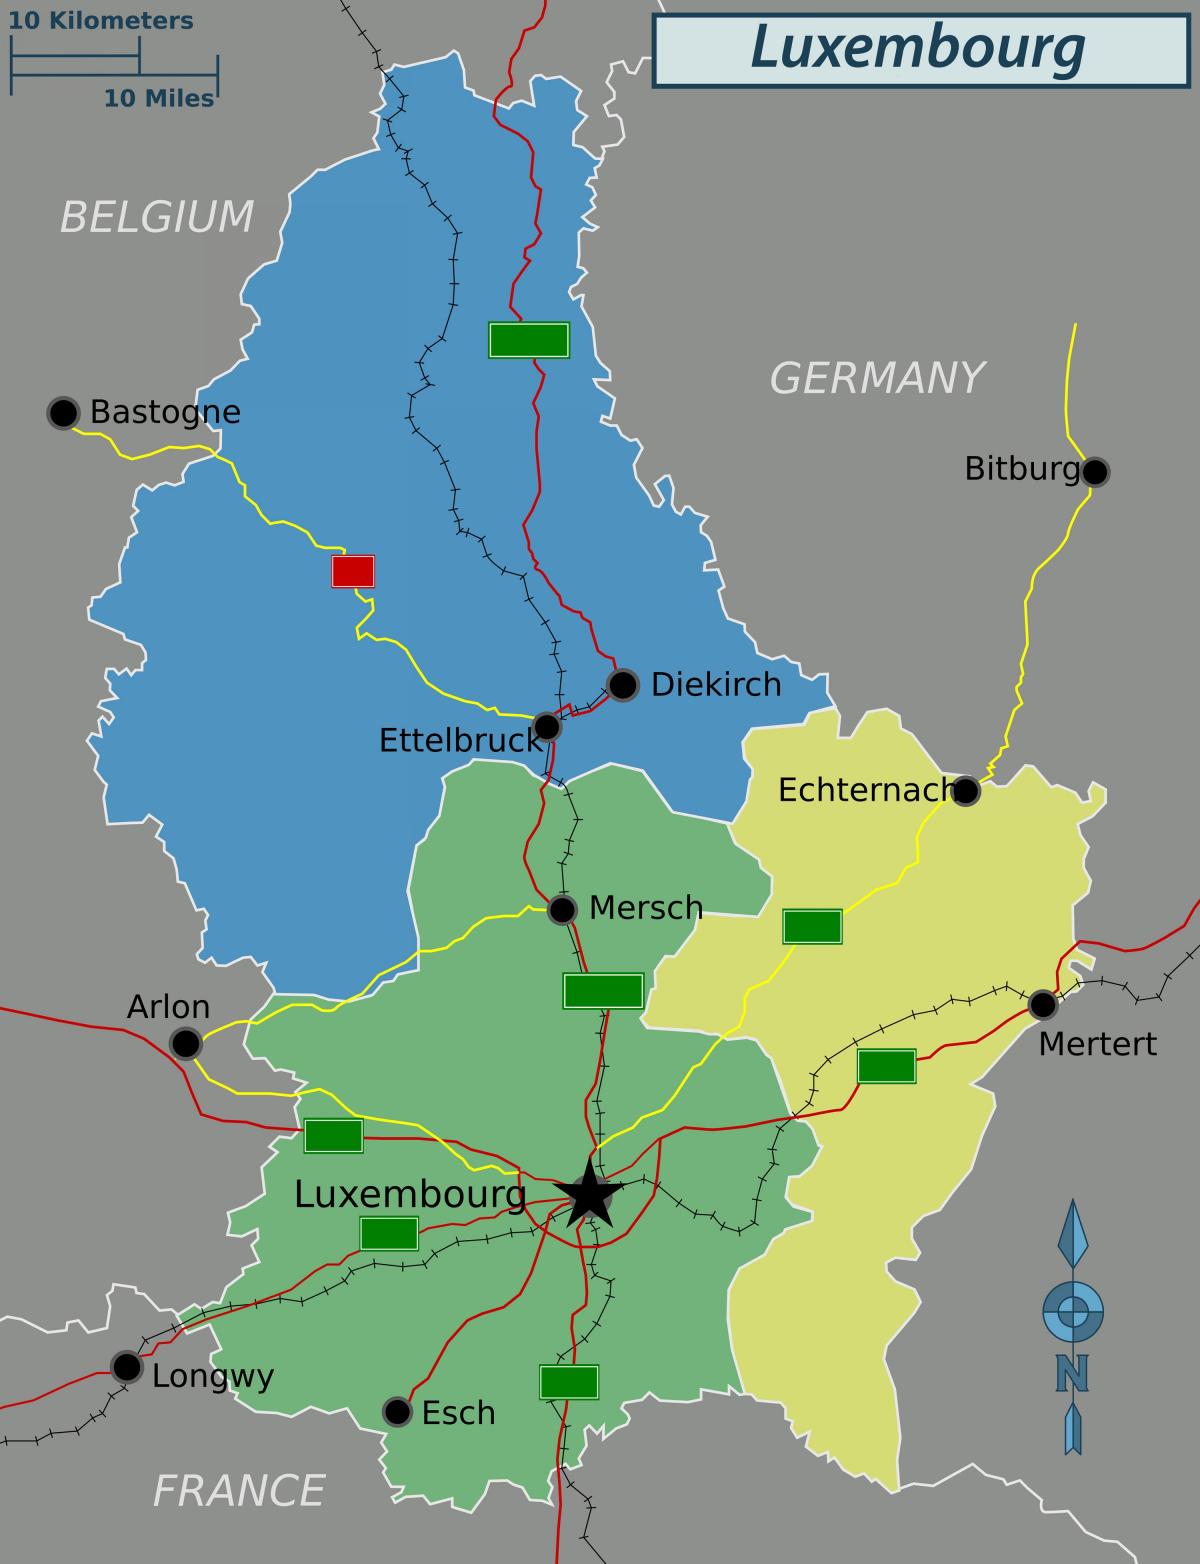 χάρτης του Λουξεμβούργου πολιτική